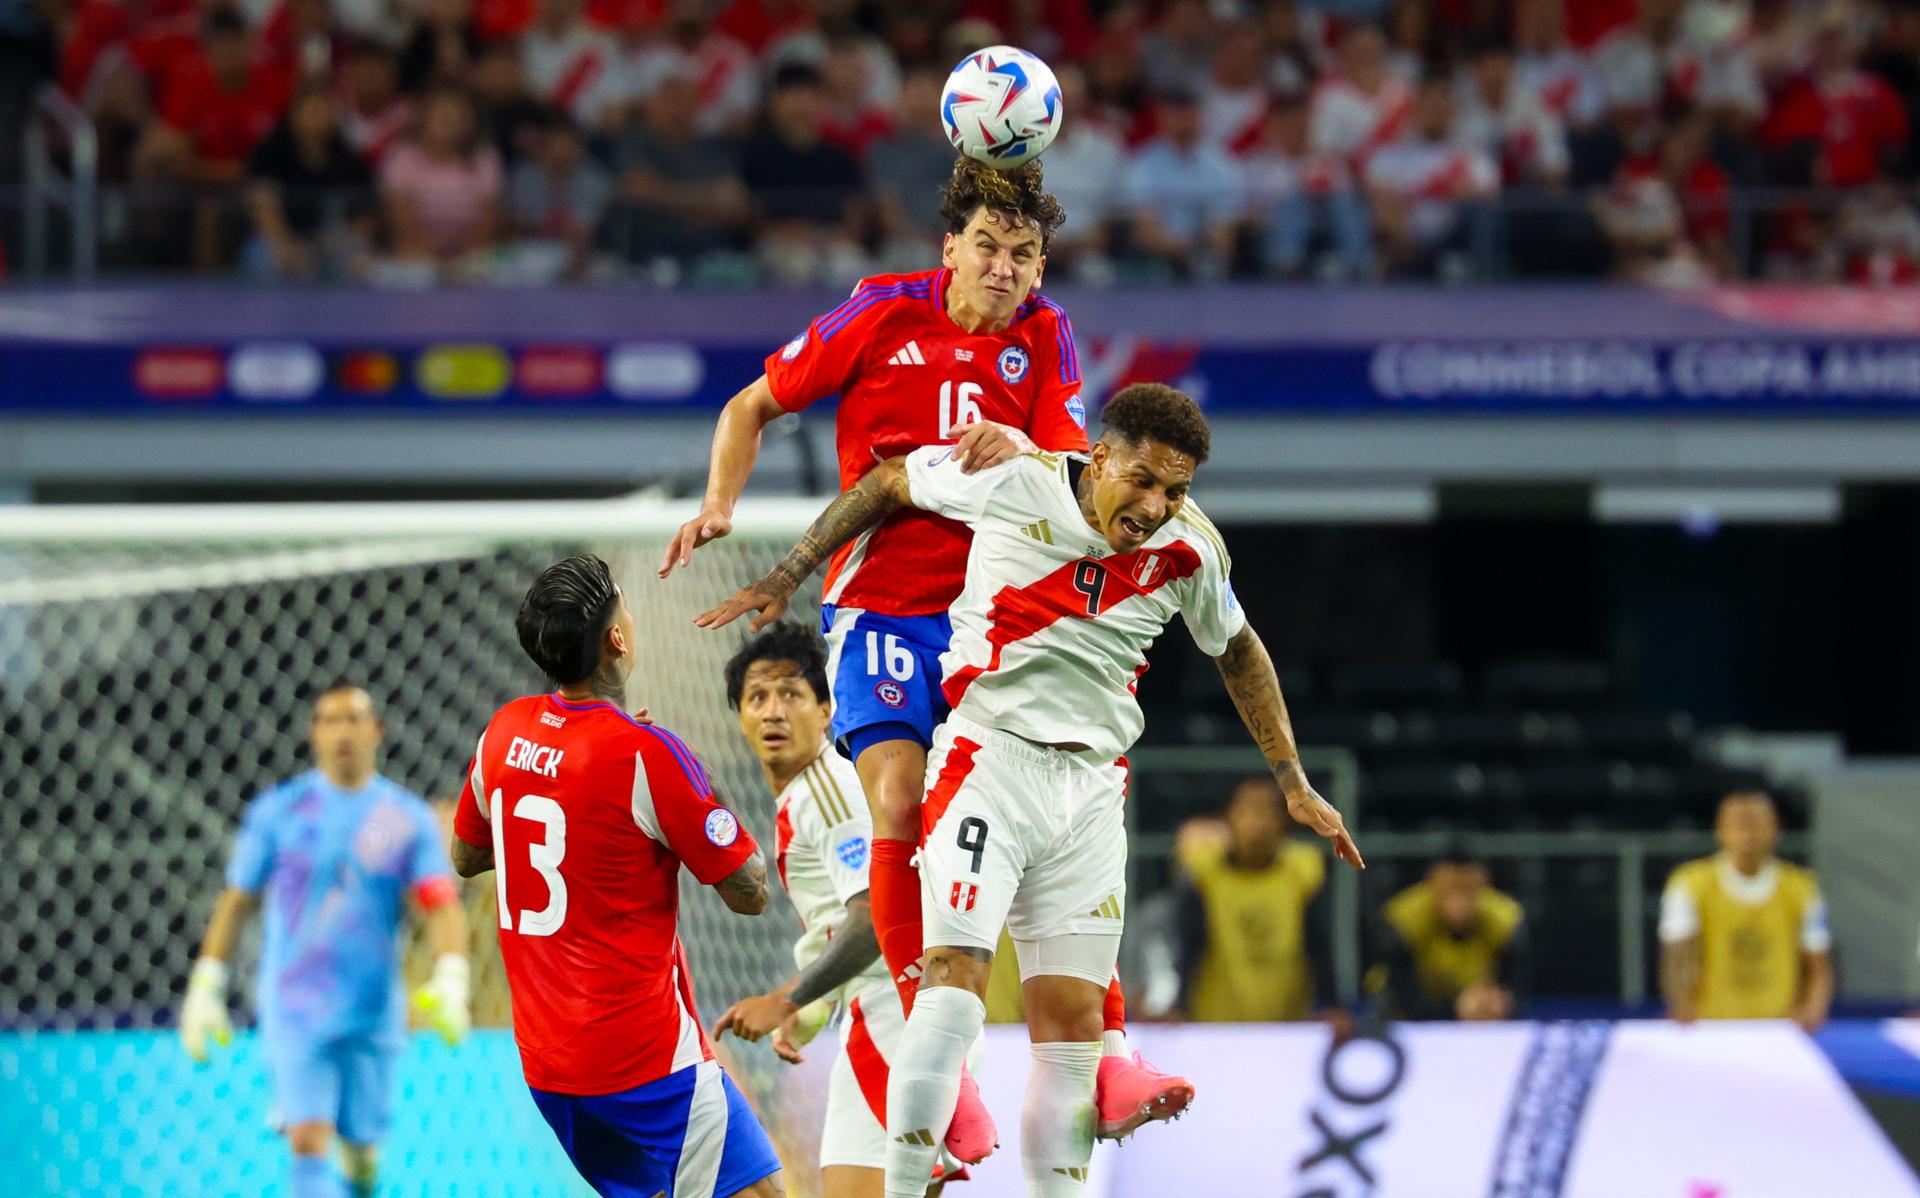 La selección peruana empató sin goles en su arranque en grupo A de la Copa América